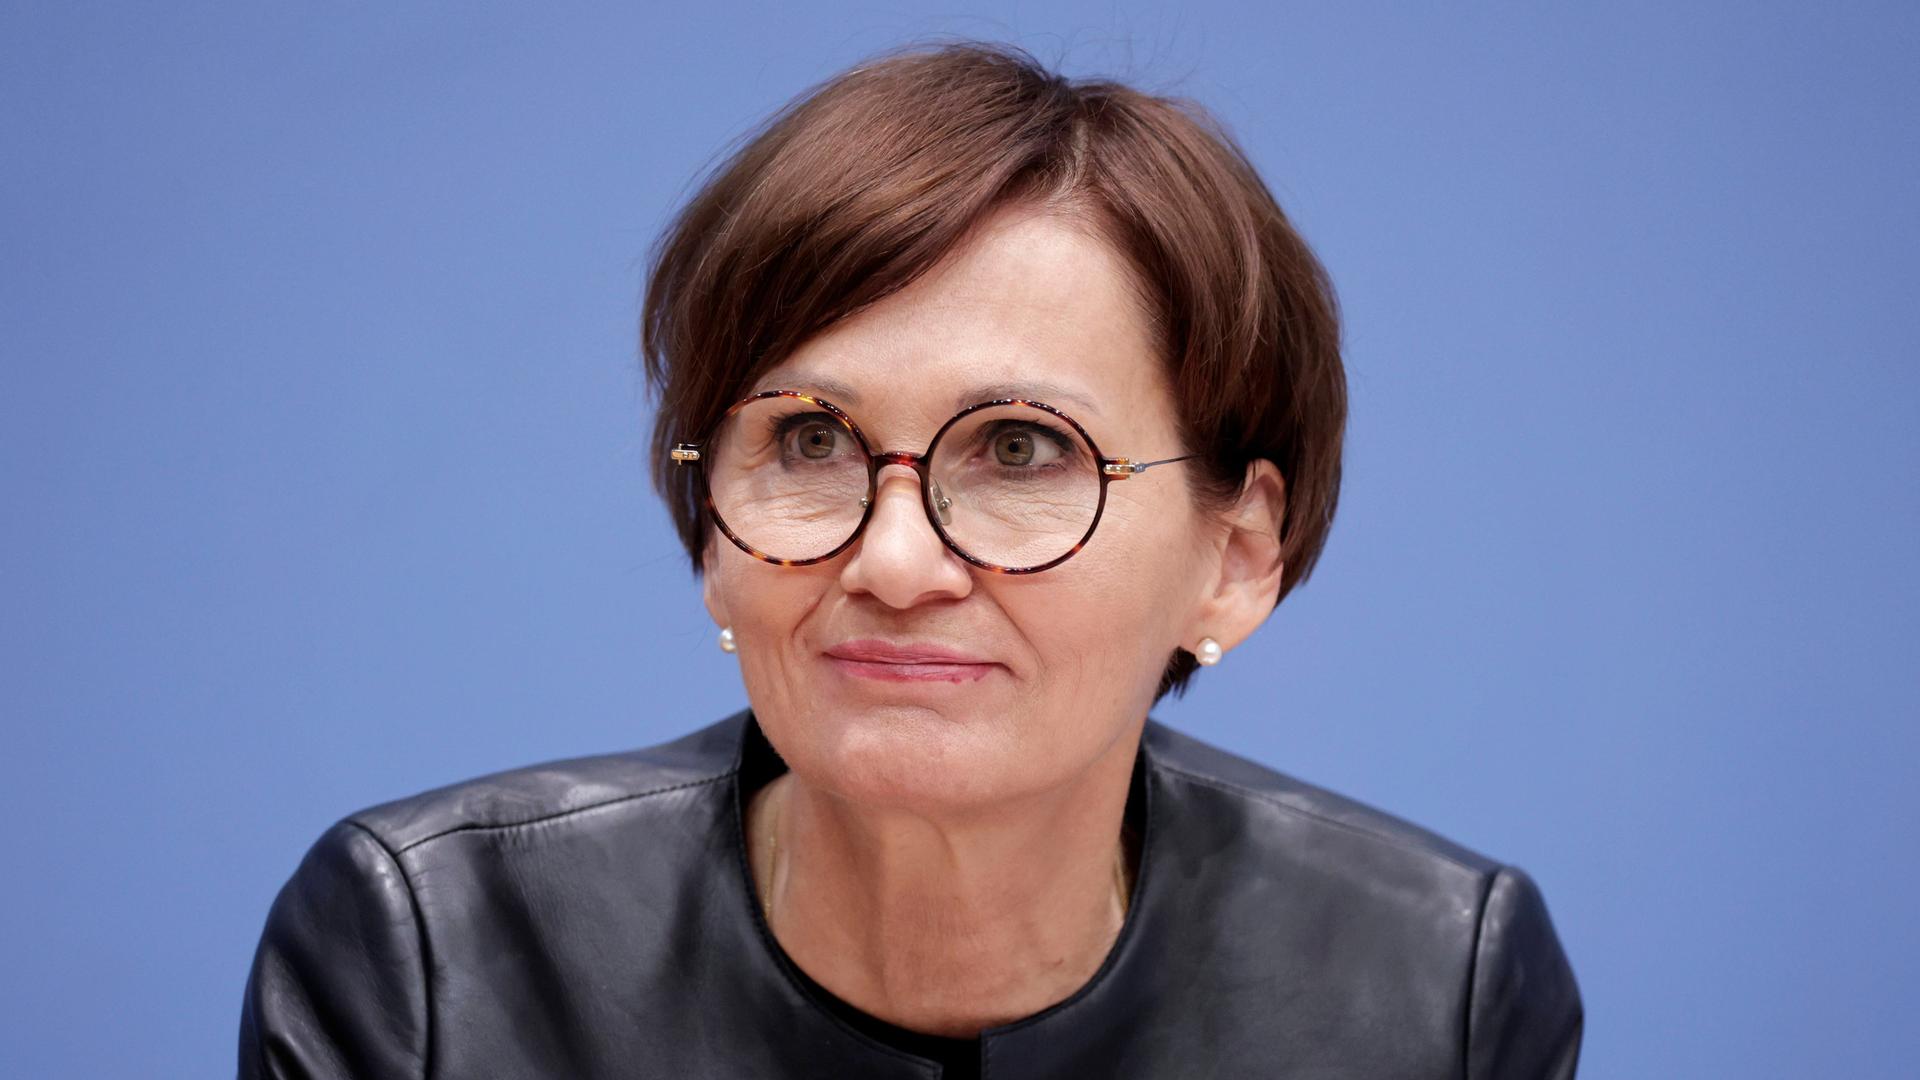 Bettina Stark-Watzinger, Bundesministerin für Bildung und Forschung, im Porträt.